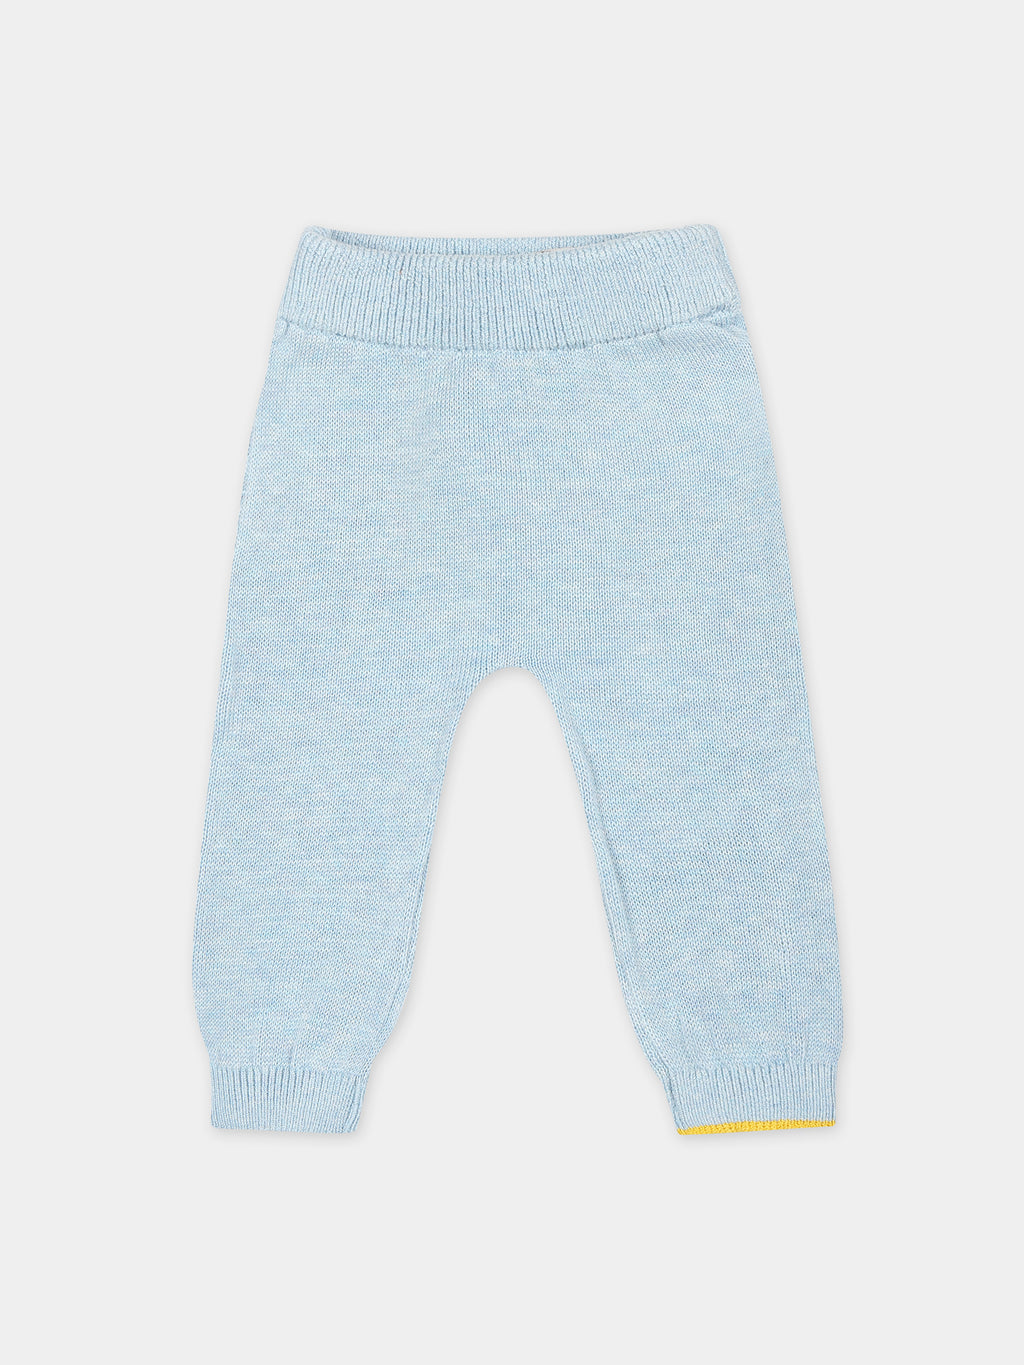 Pantaloni celesti per neonato